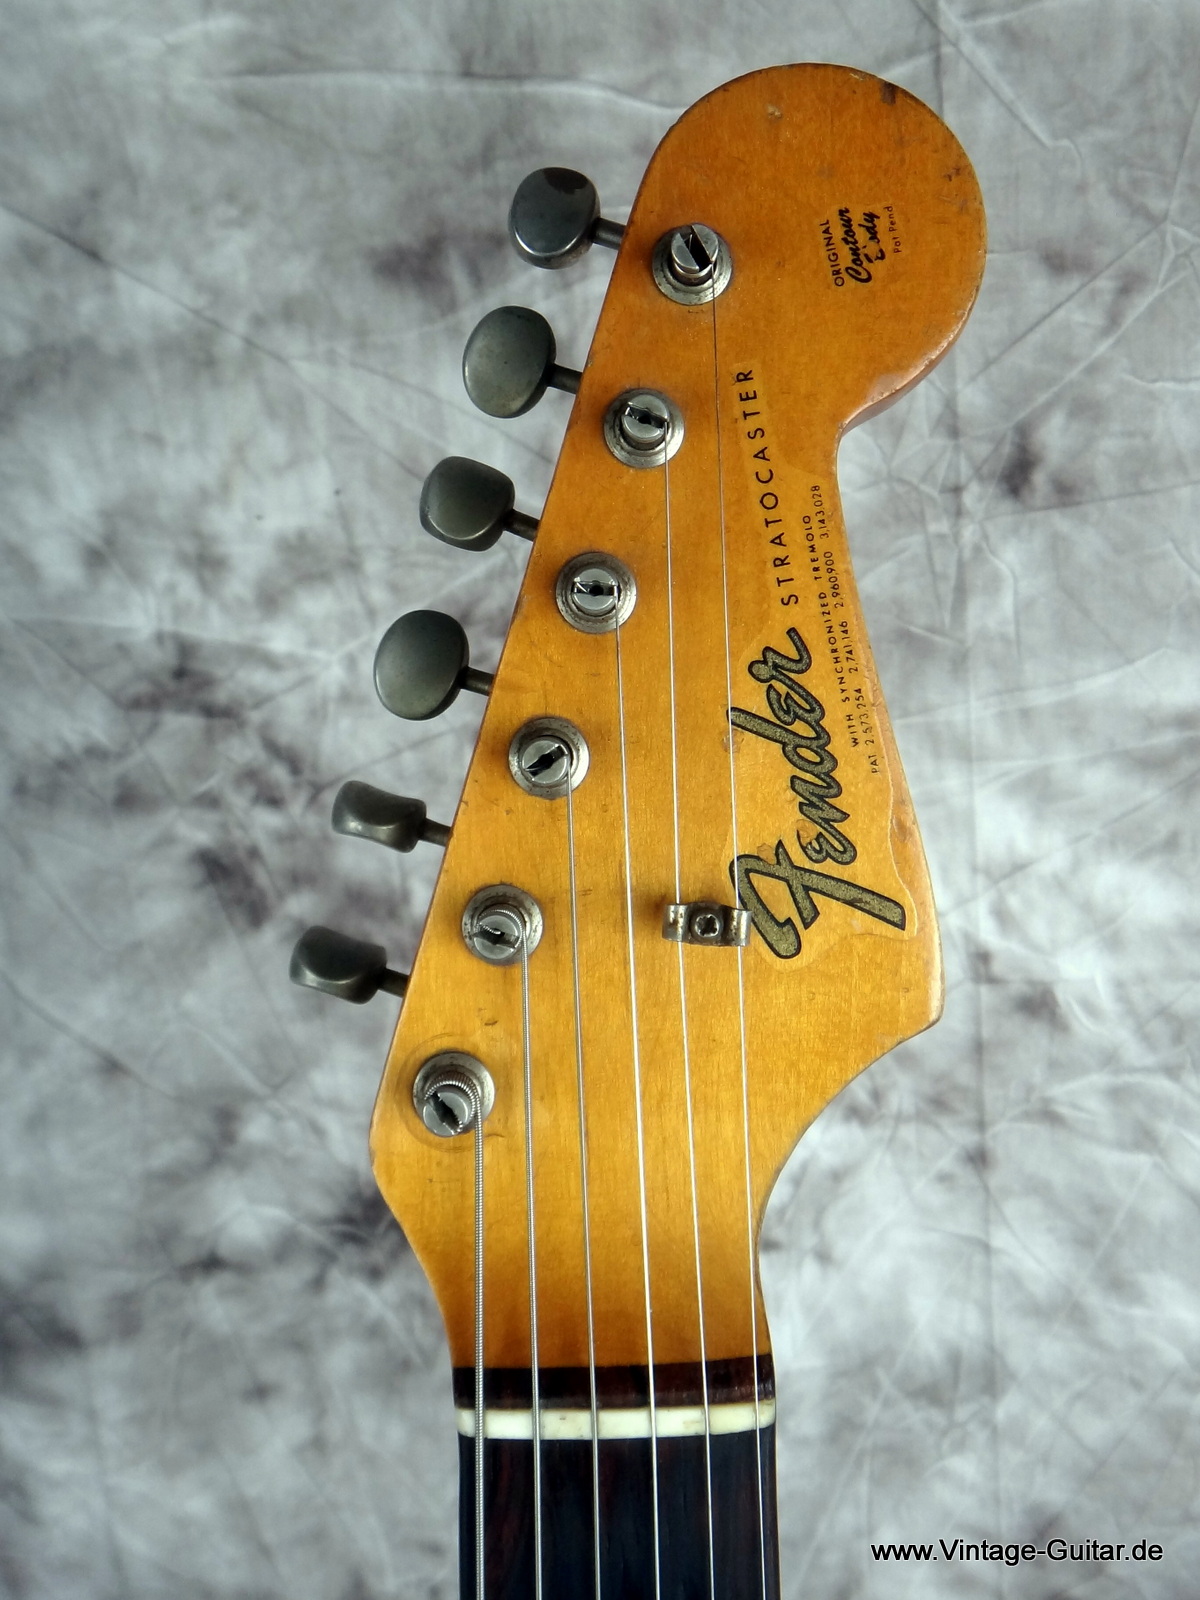 Fender_Stratocaster_1965-sunburst_all-original-007.JPG